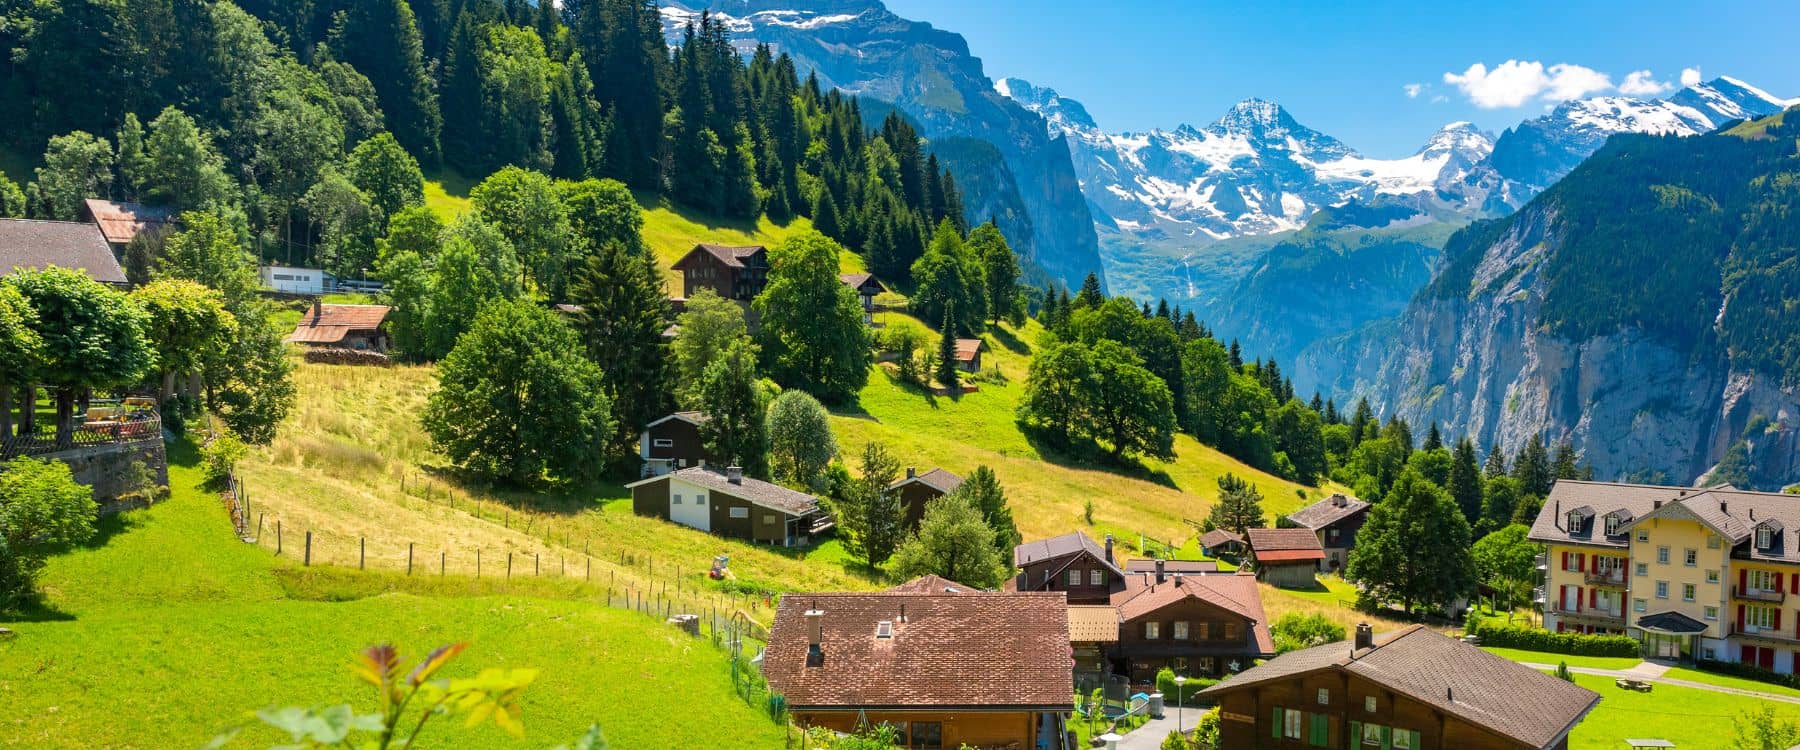 Tour du lịch Thụy Sĩ - Pháp